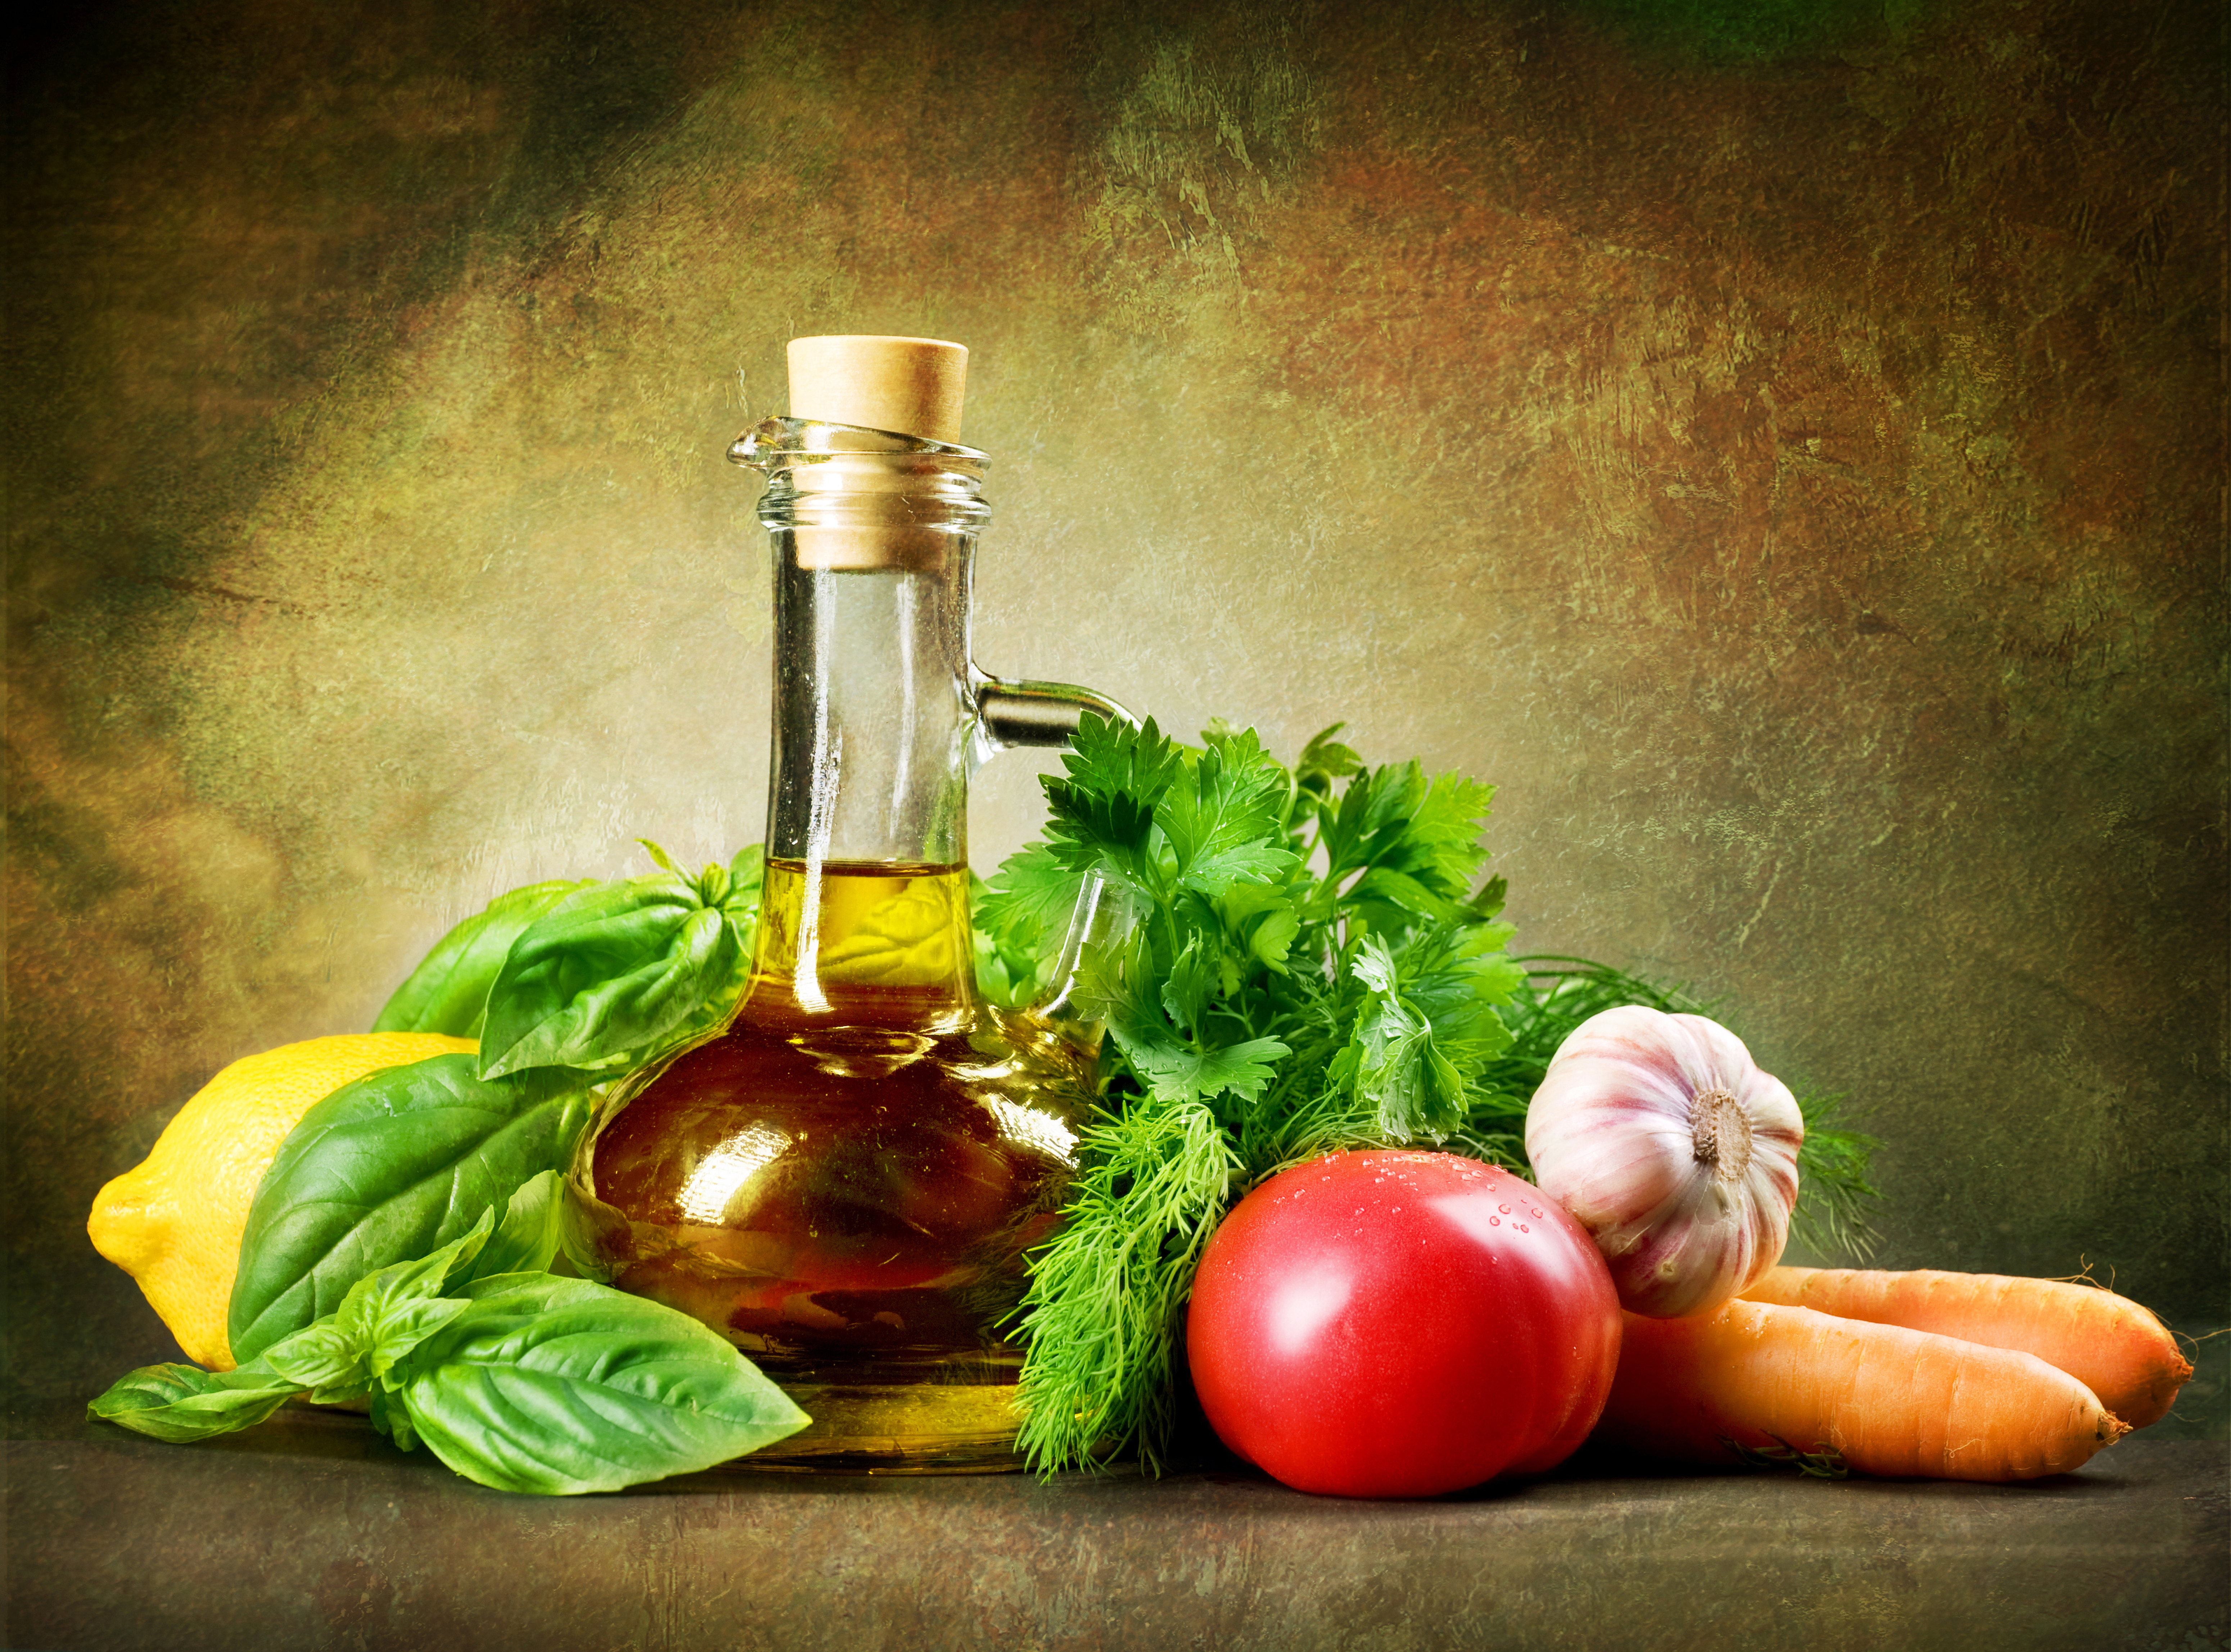 Пища с растительным маслом. Натюрморт с оливковым маслом. Овощное масло. Бутылка оливкового масла. Растительное масло.